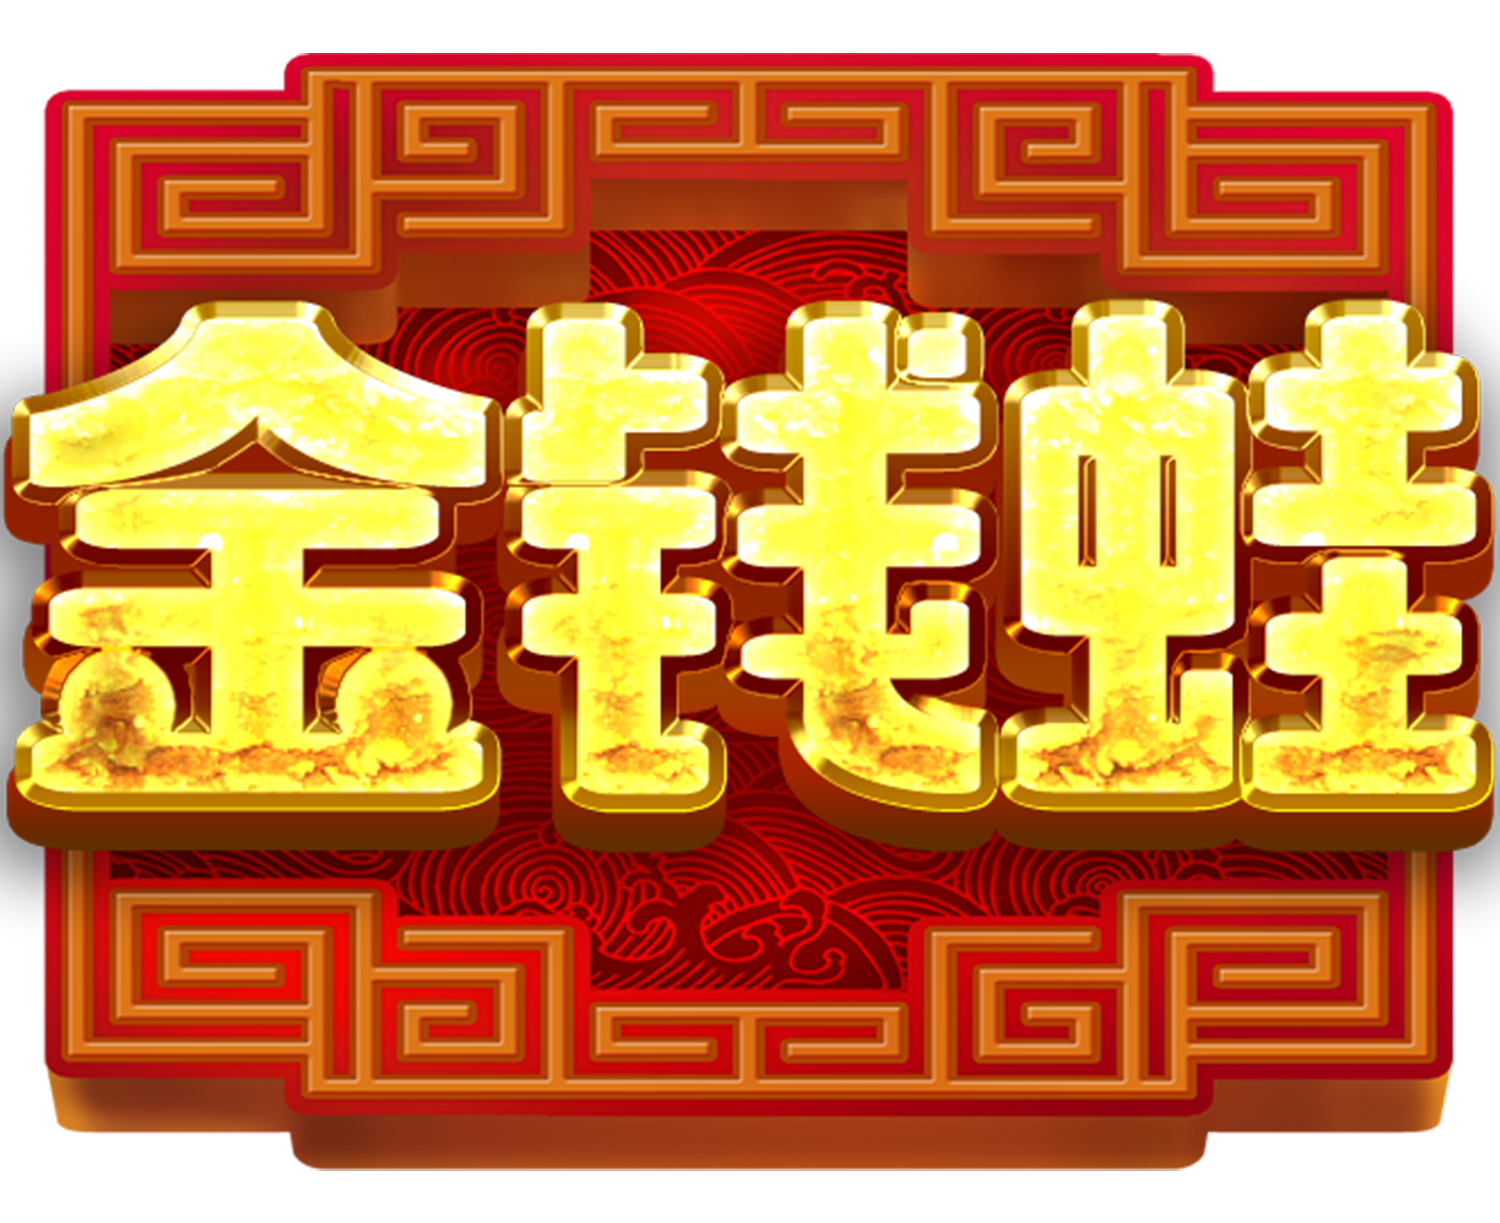 01_logo_chinese_gmf.png thumbnail